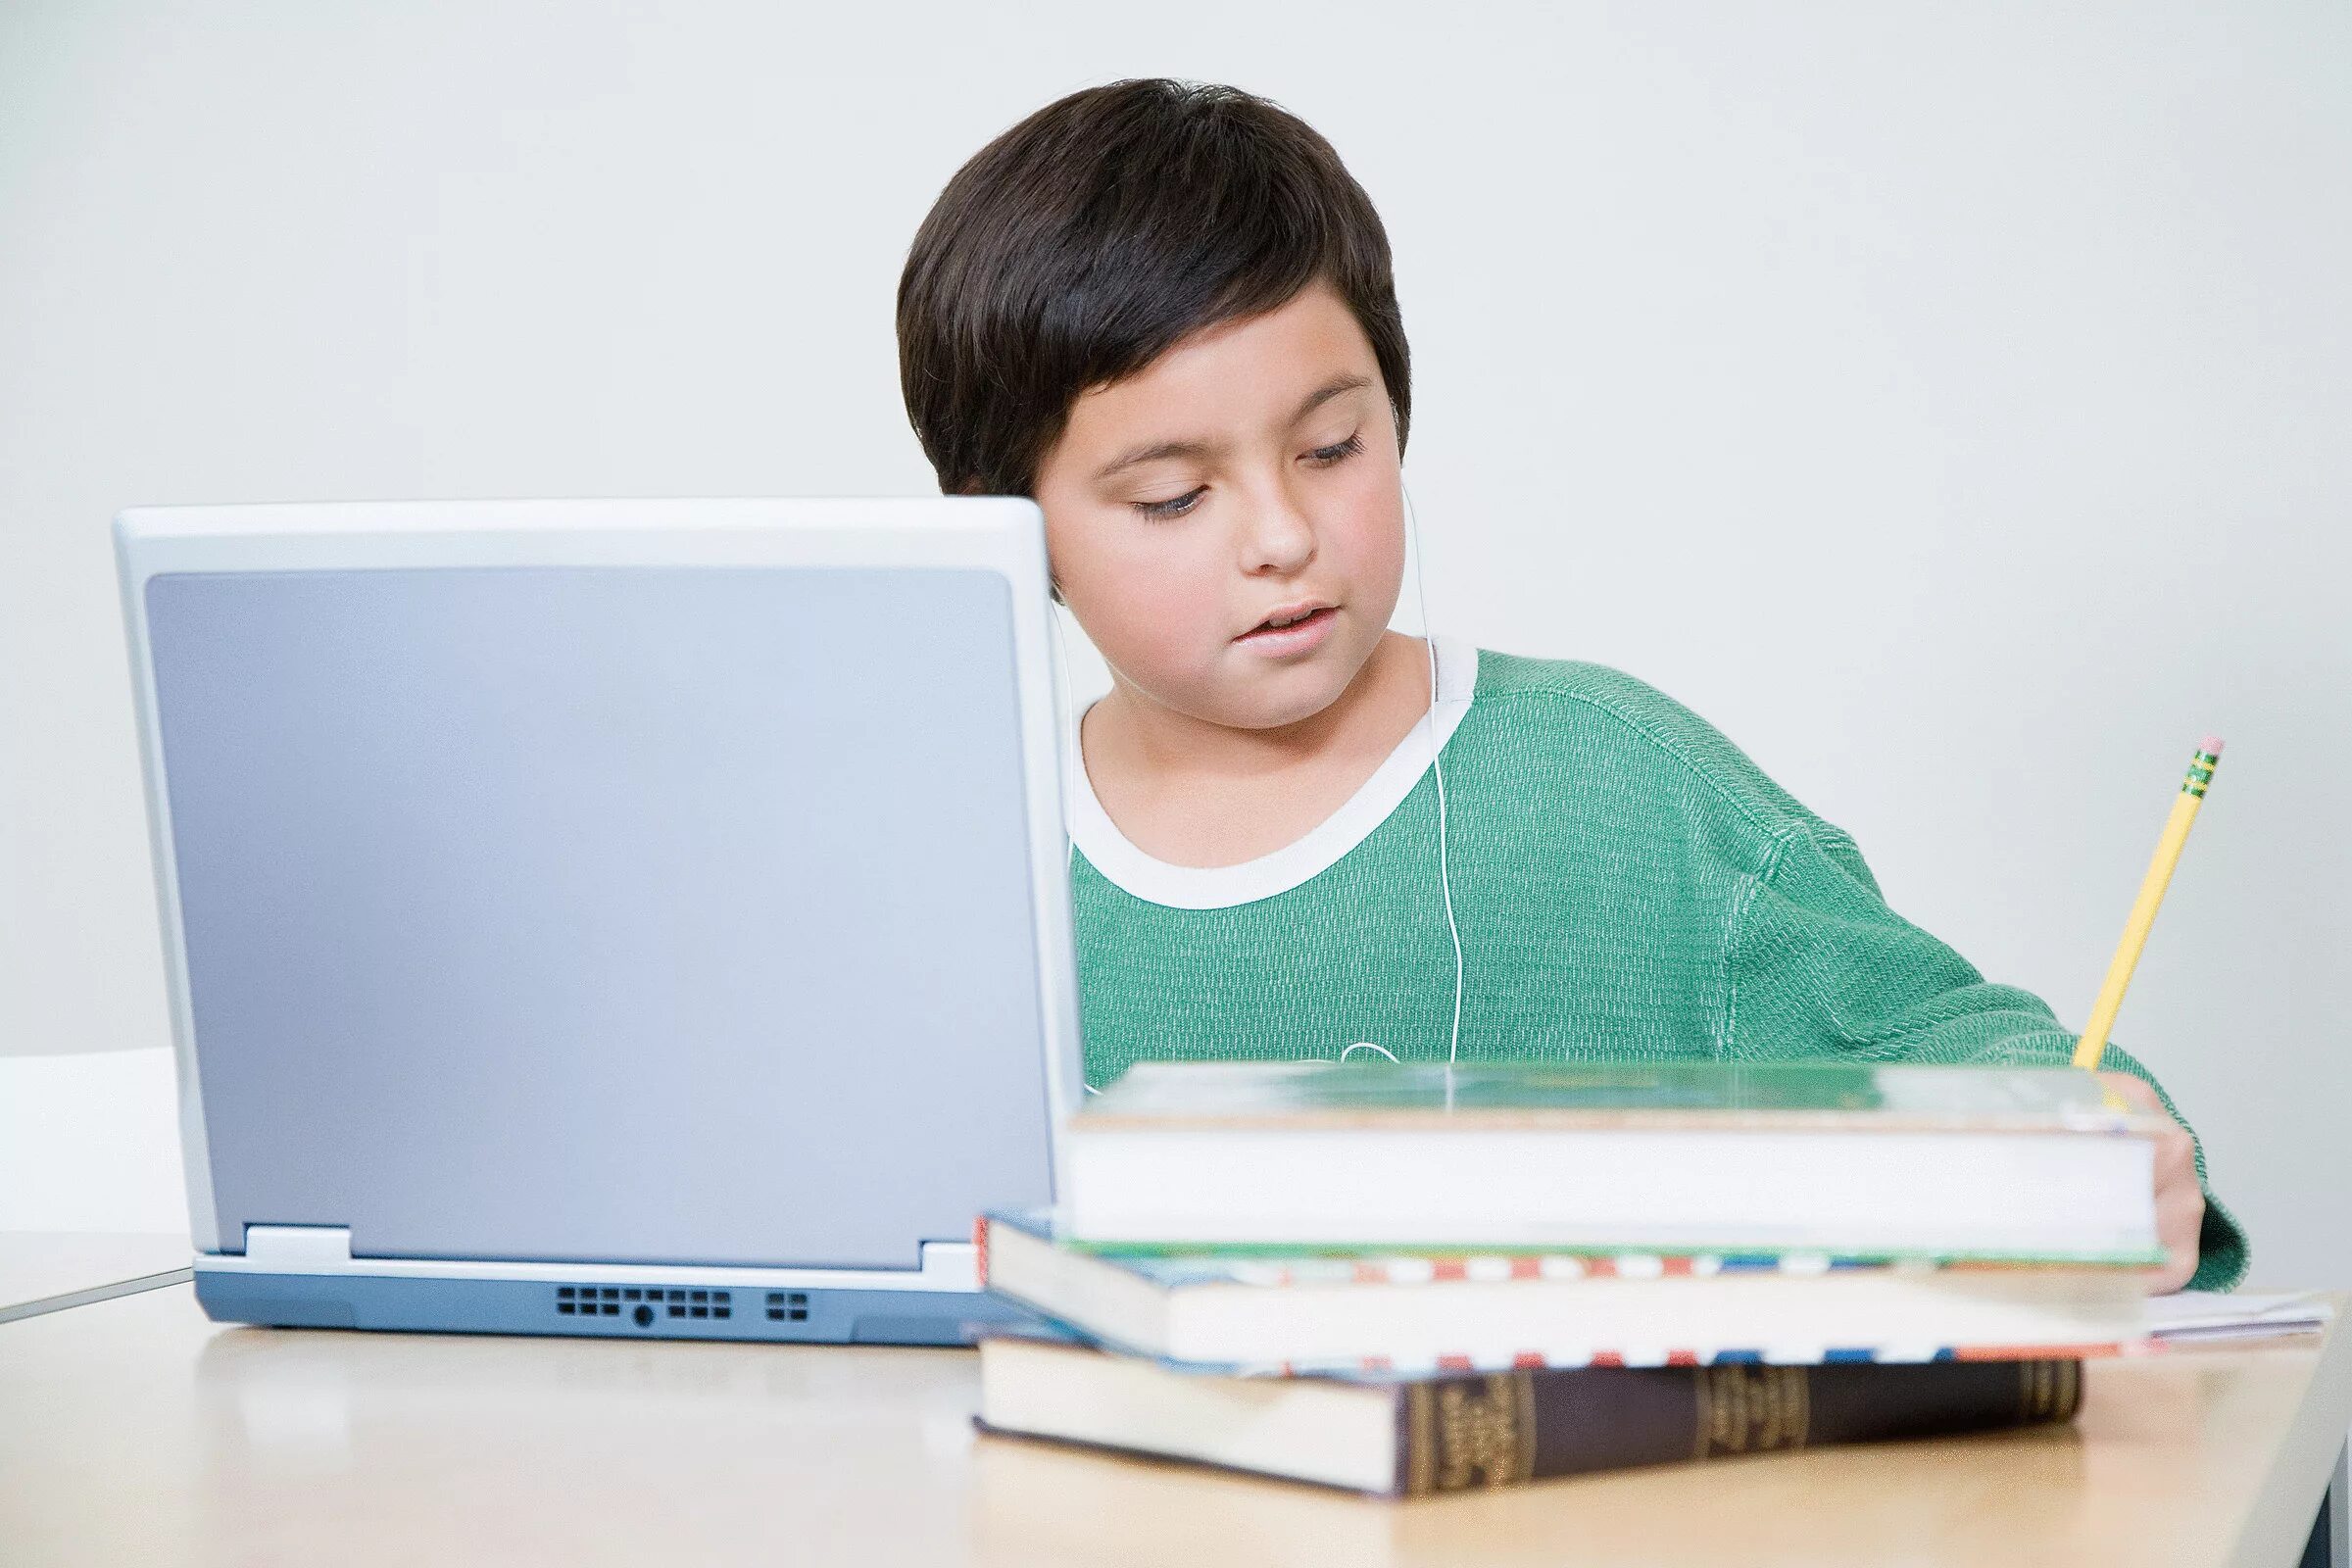 Компьютер для школьника. Ребенок за компьютером. Мальчик с компьютером. Школьник с ноутбуком.